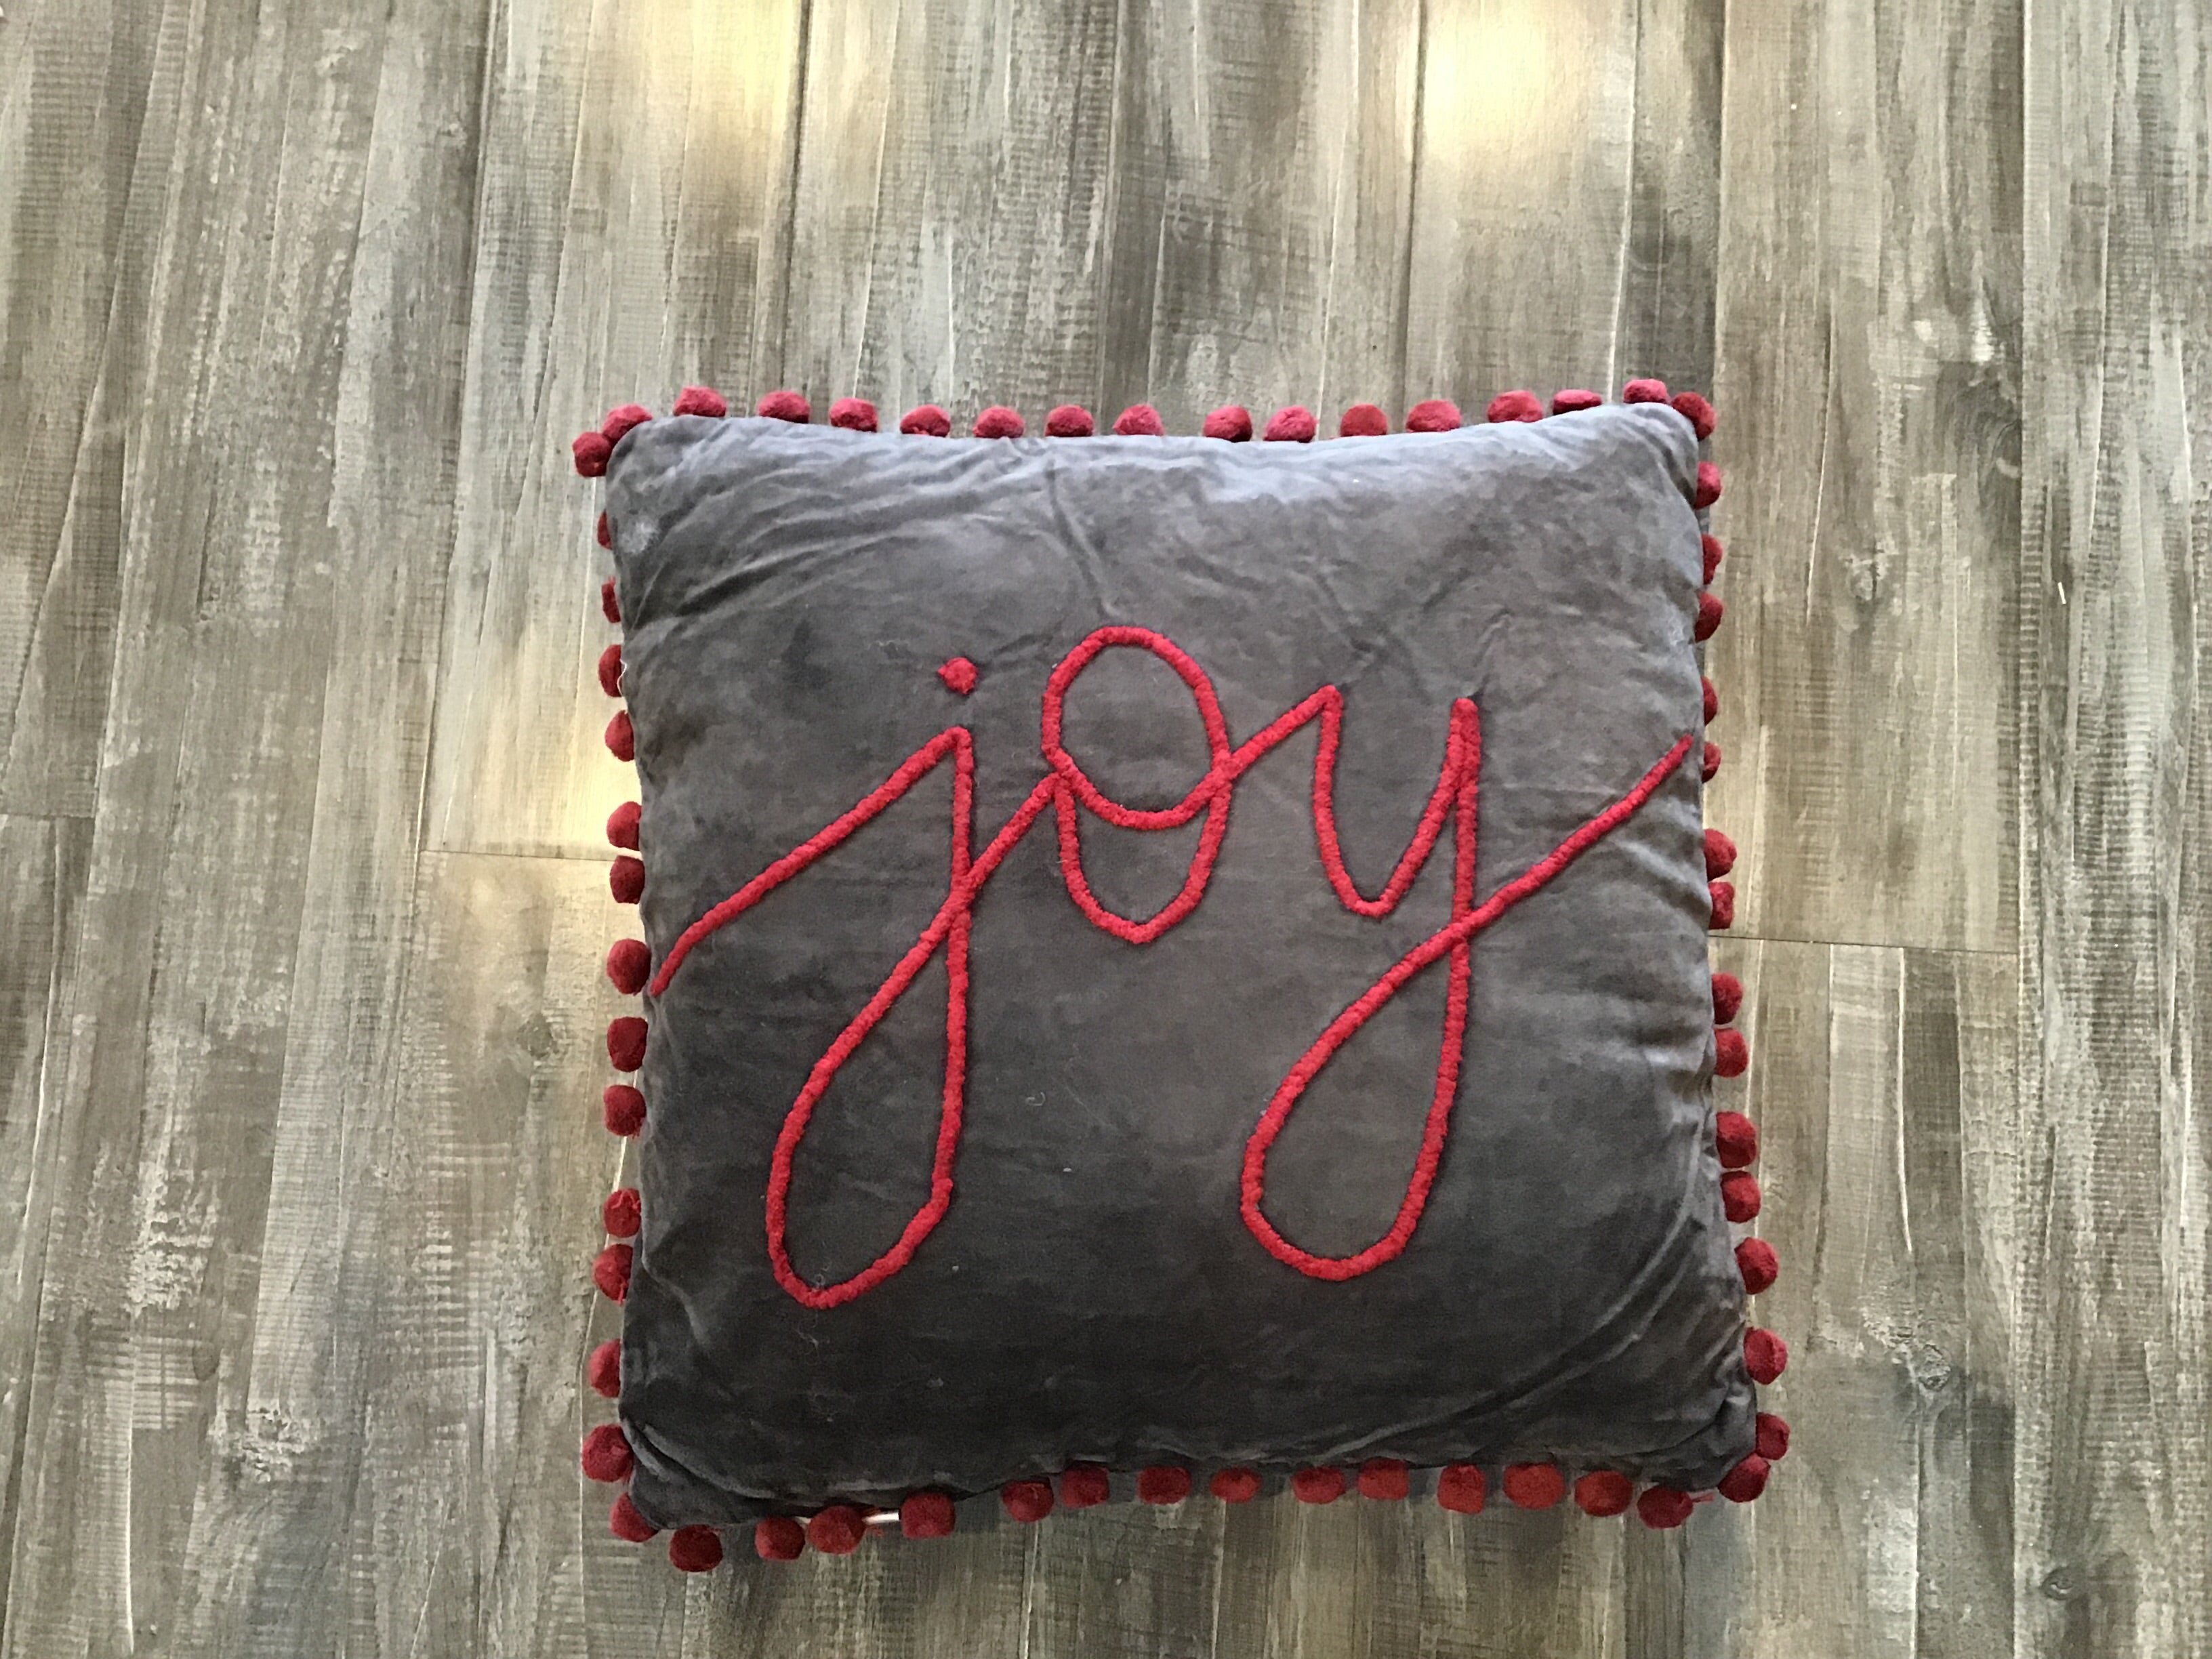 Primitives Joy grey pillow